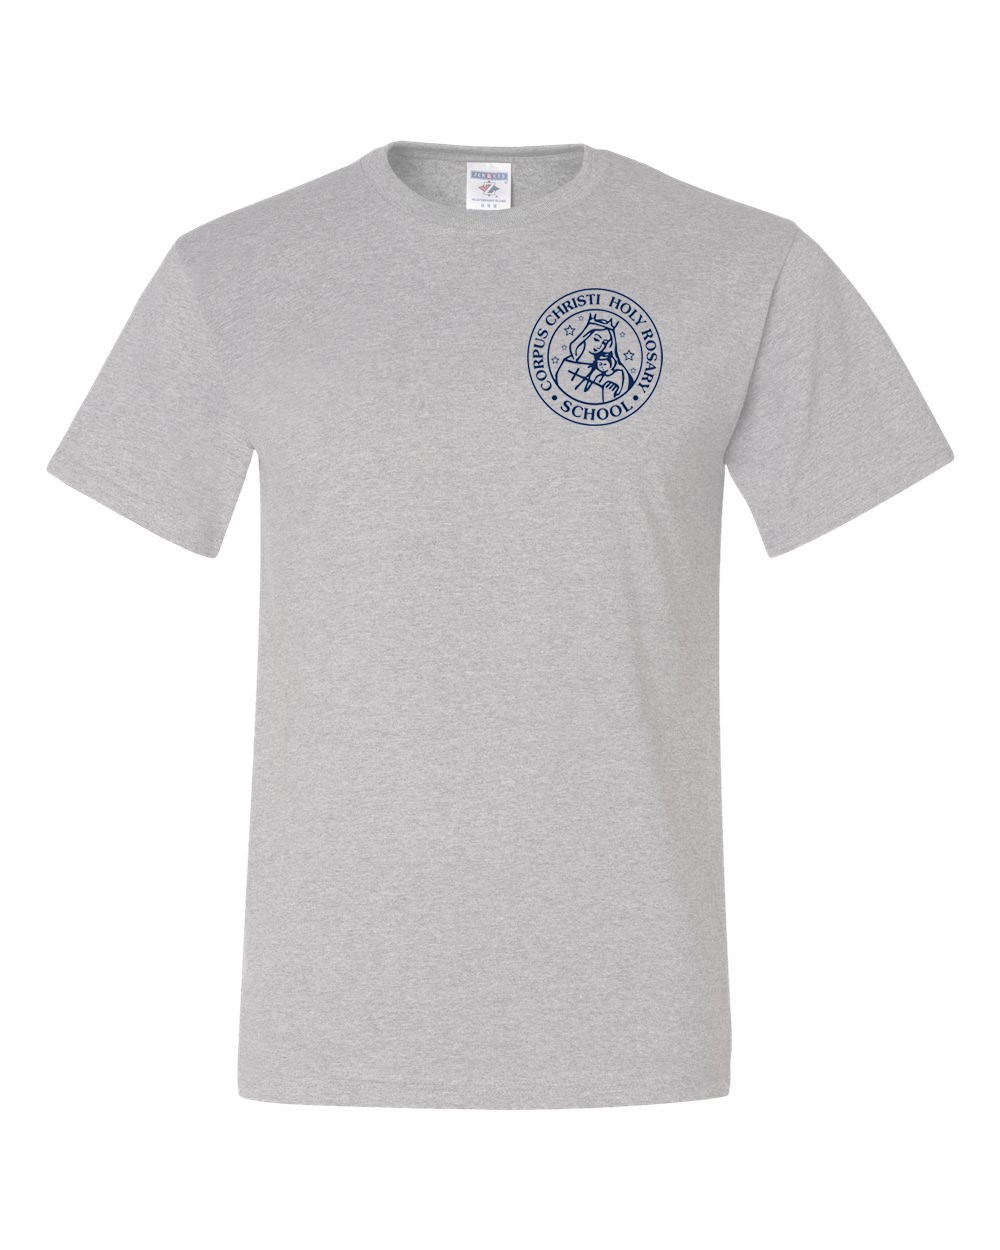 CCHRS S/S Gym T-Shirt w/ School Logo